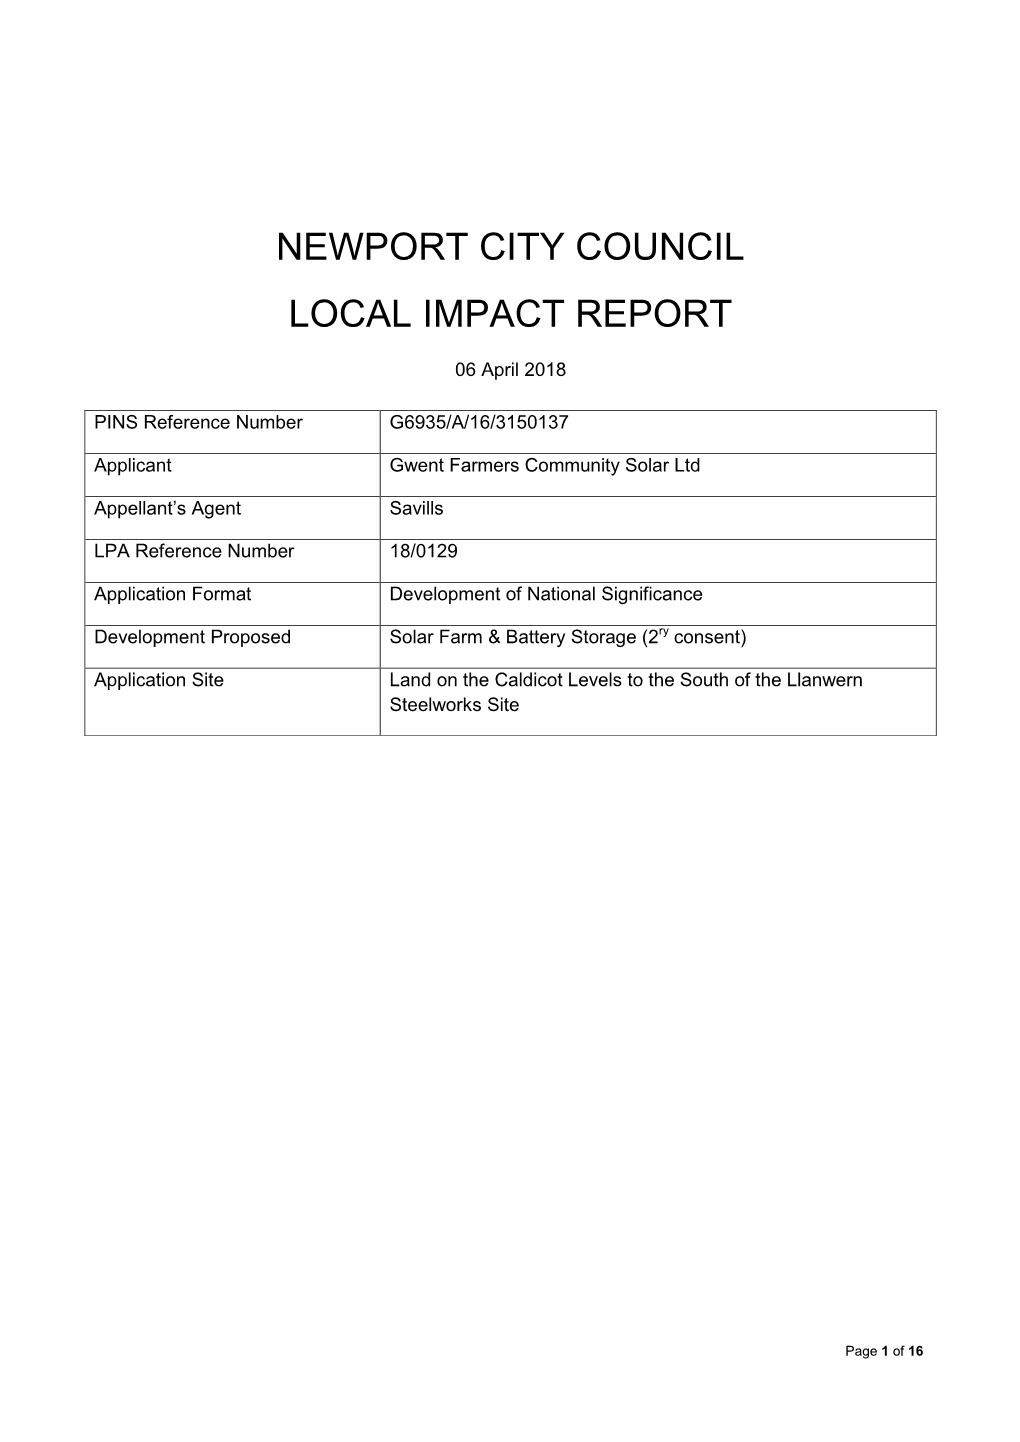 Newport City Council Local Impact Report